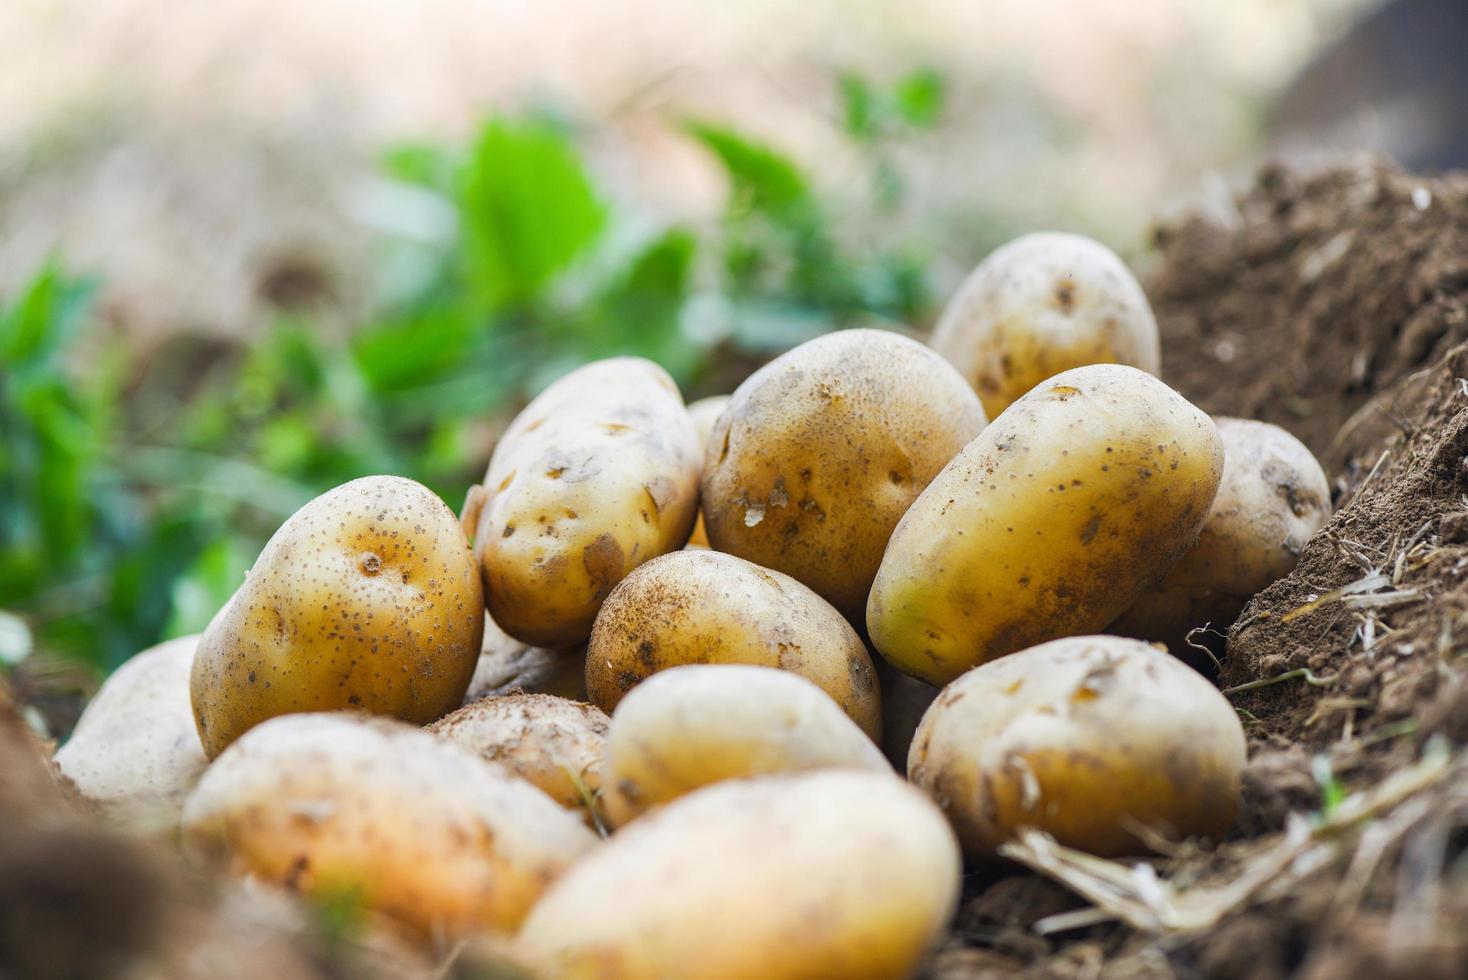 plante de pomme de terre fraîche, récolte de pommes de terre mûres produits agricoles du champ de pommes de terre photo